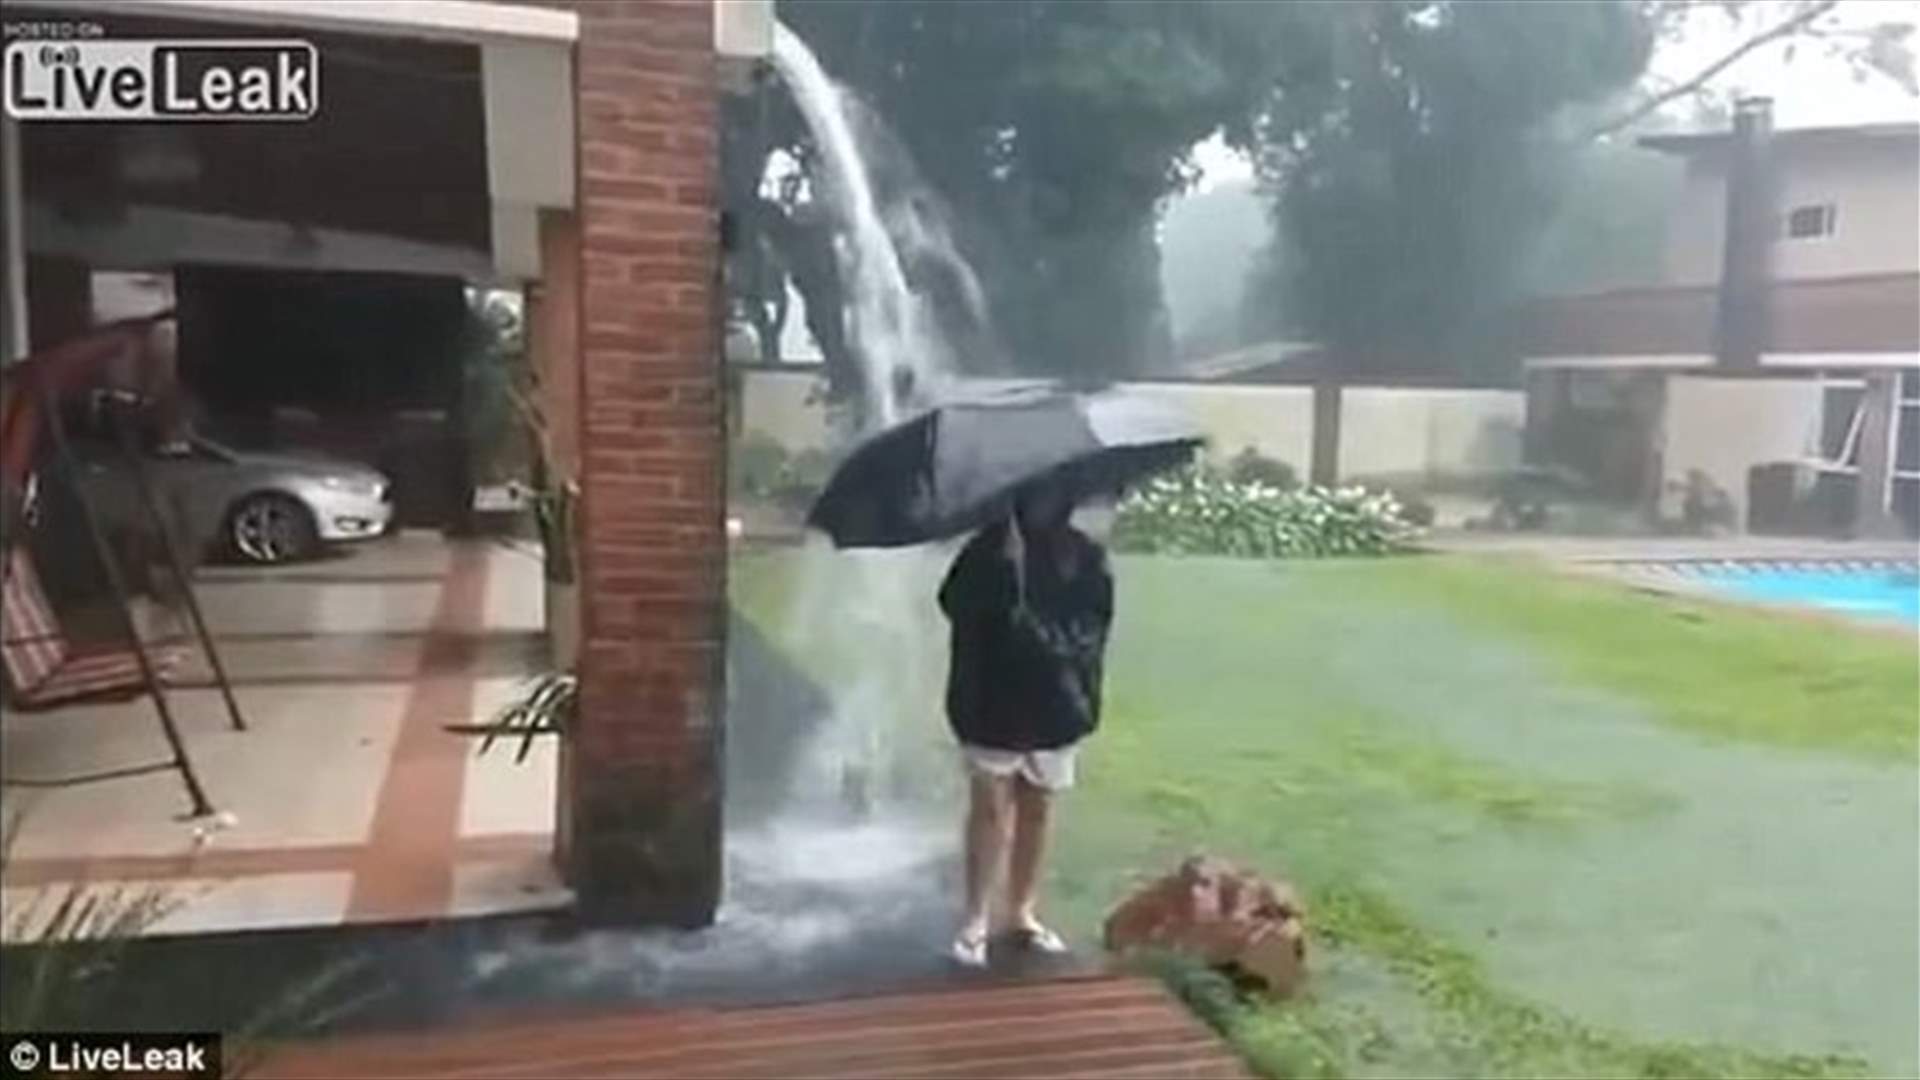 بالفيديو- صبي يلعب تحت المطر عندما برقت السماء...وهذا ما حصل!